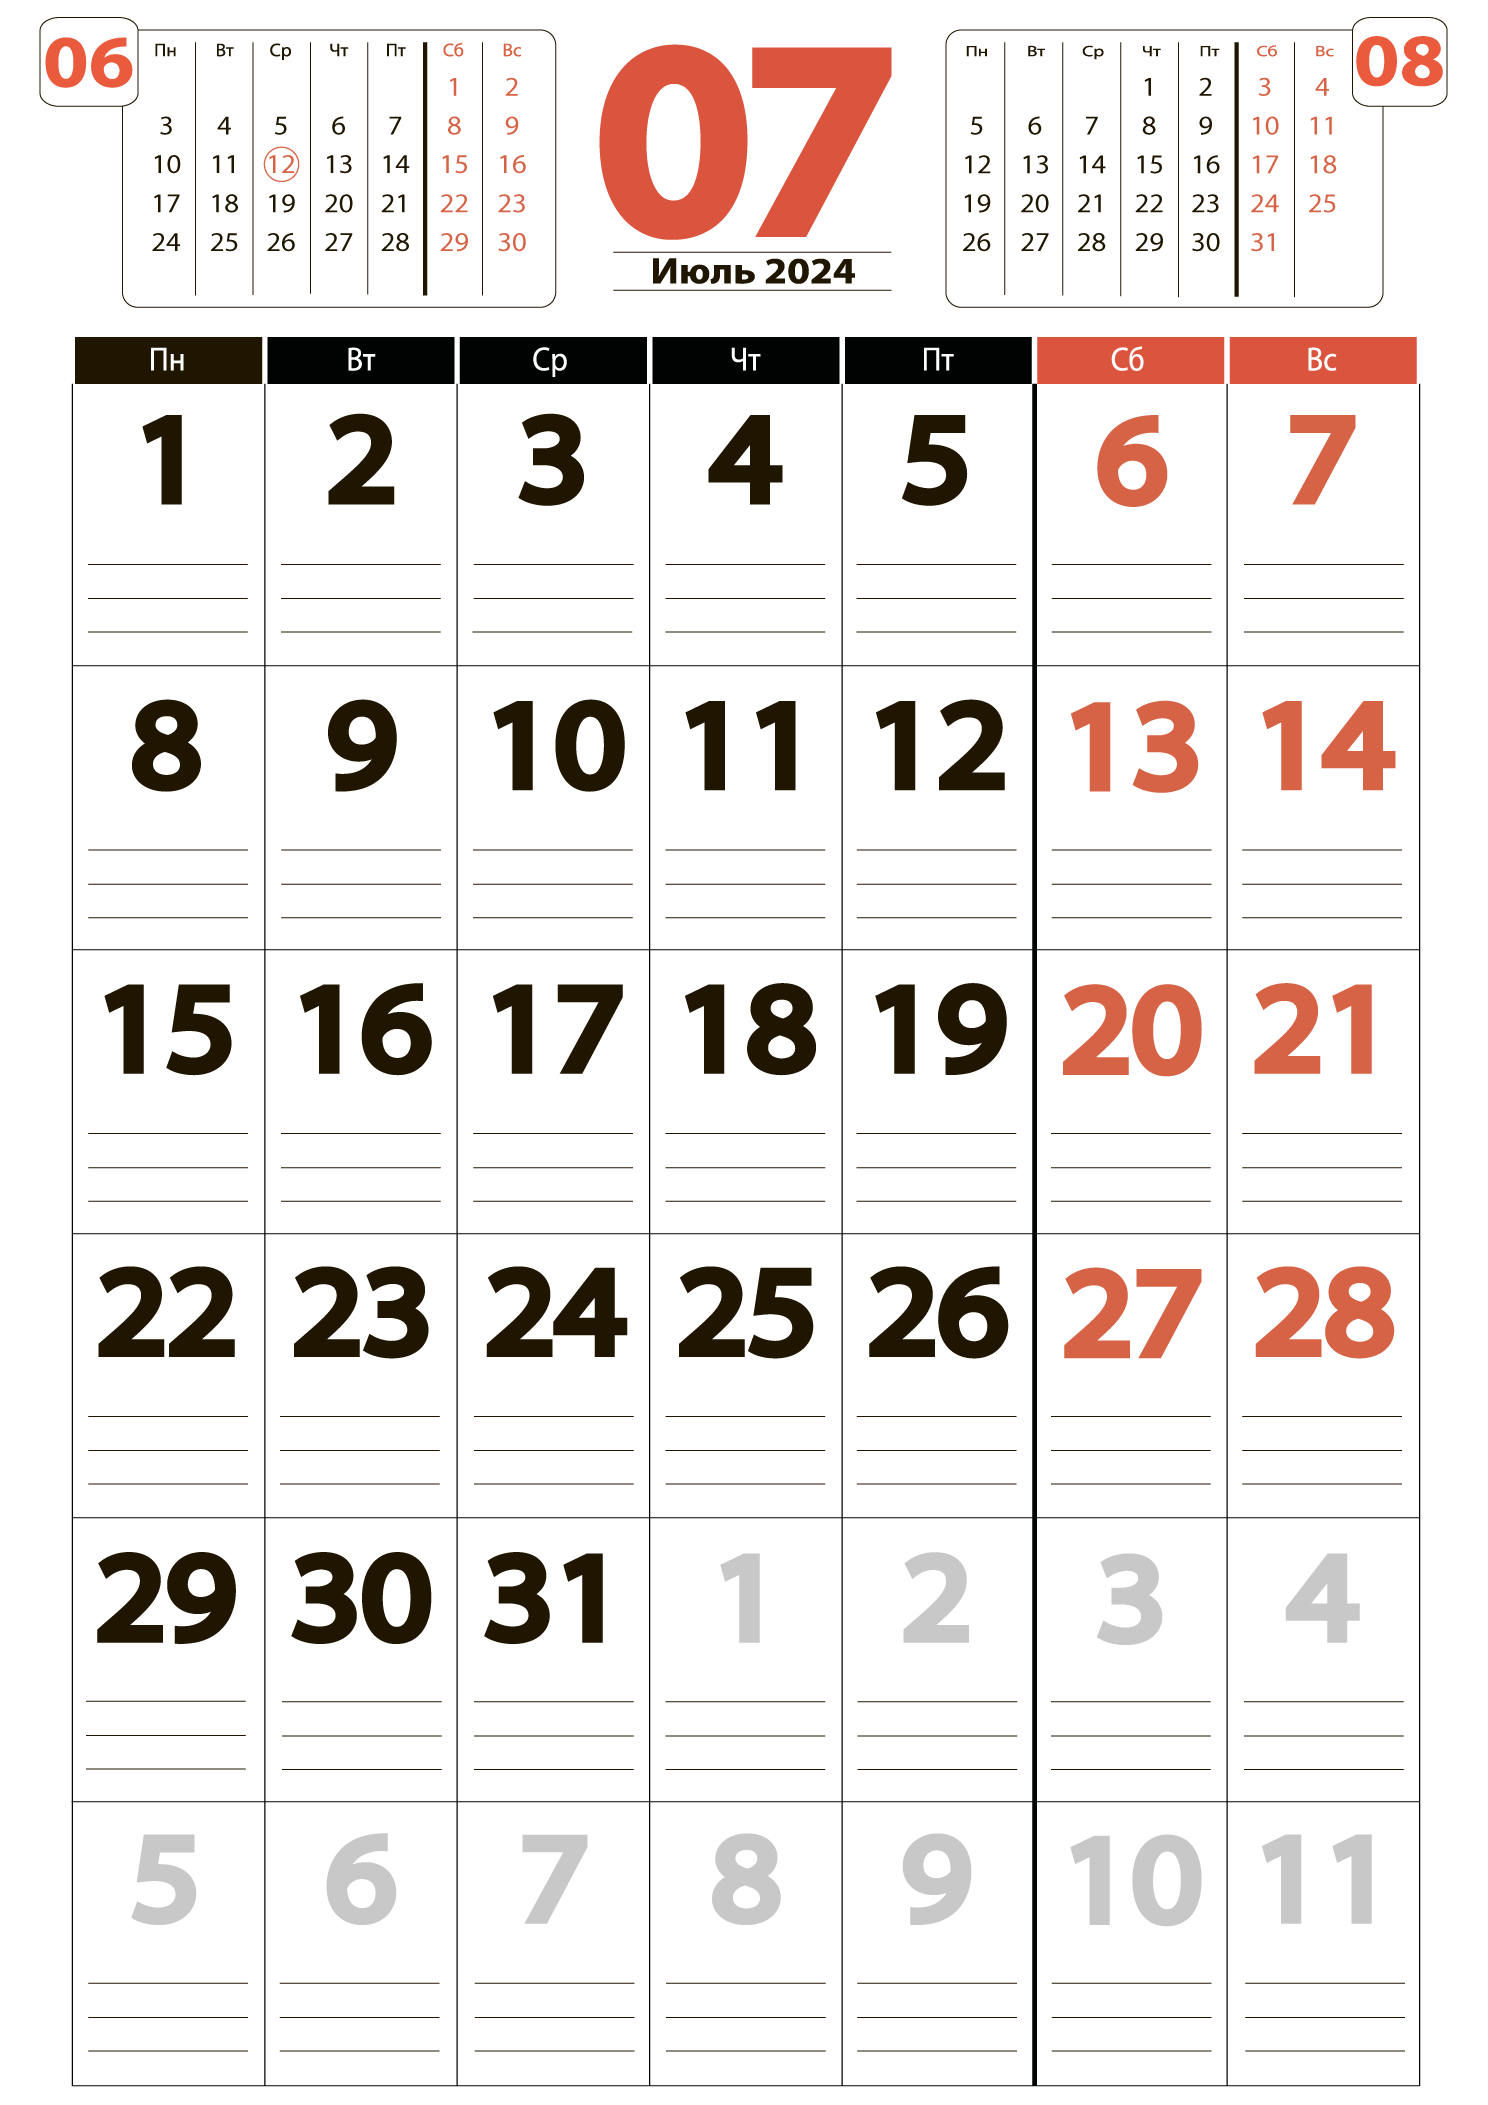 Печать крупного календаря на июль 2024